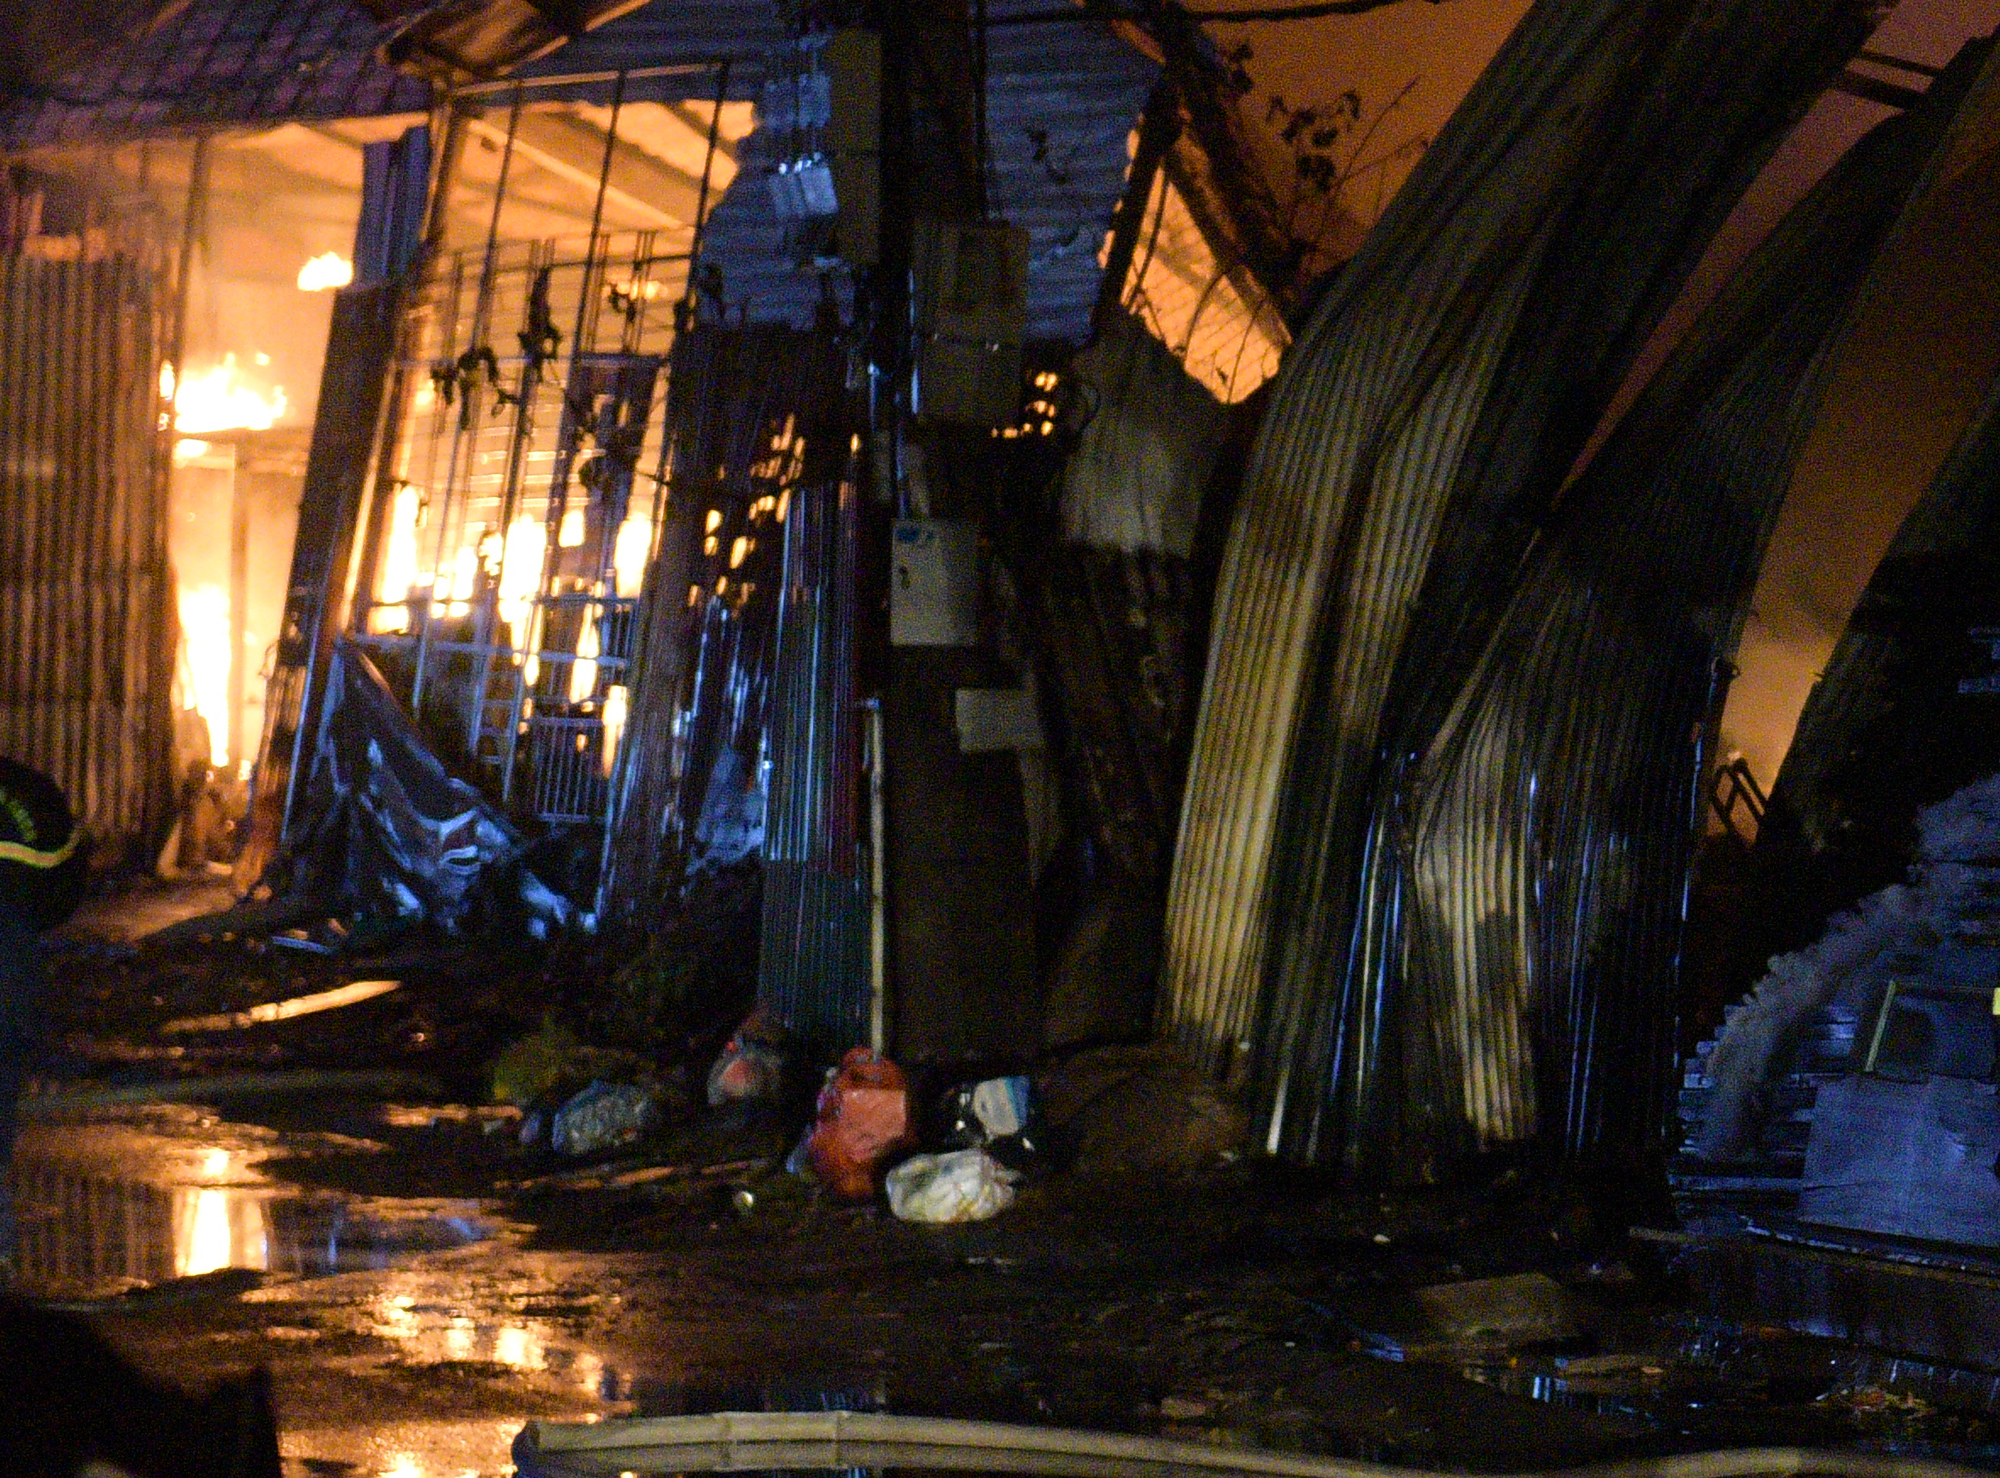 Cháy lớn trong đêm tại kho xưởng quận Nam Từ Liêm - Ảnh 2.